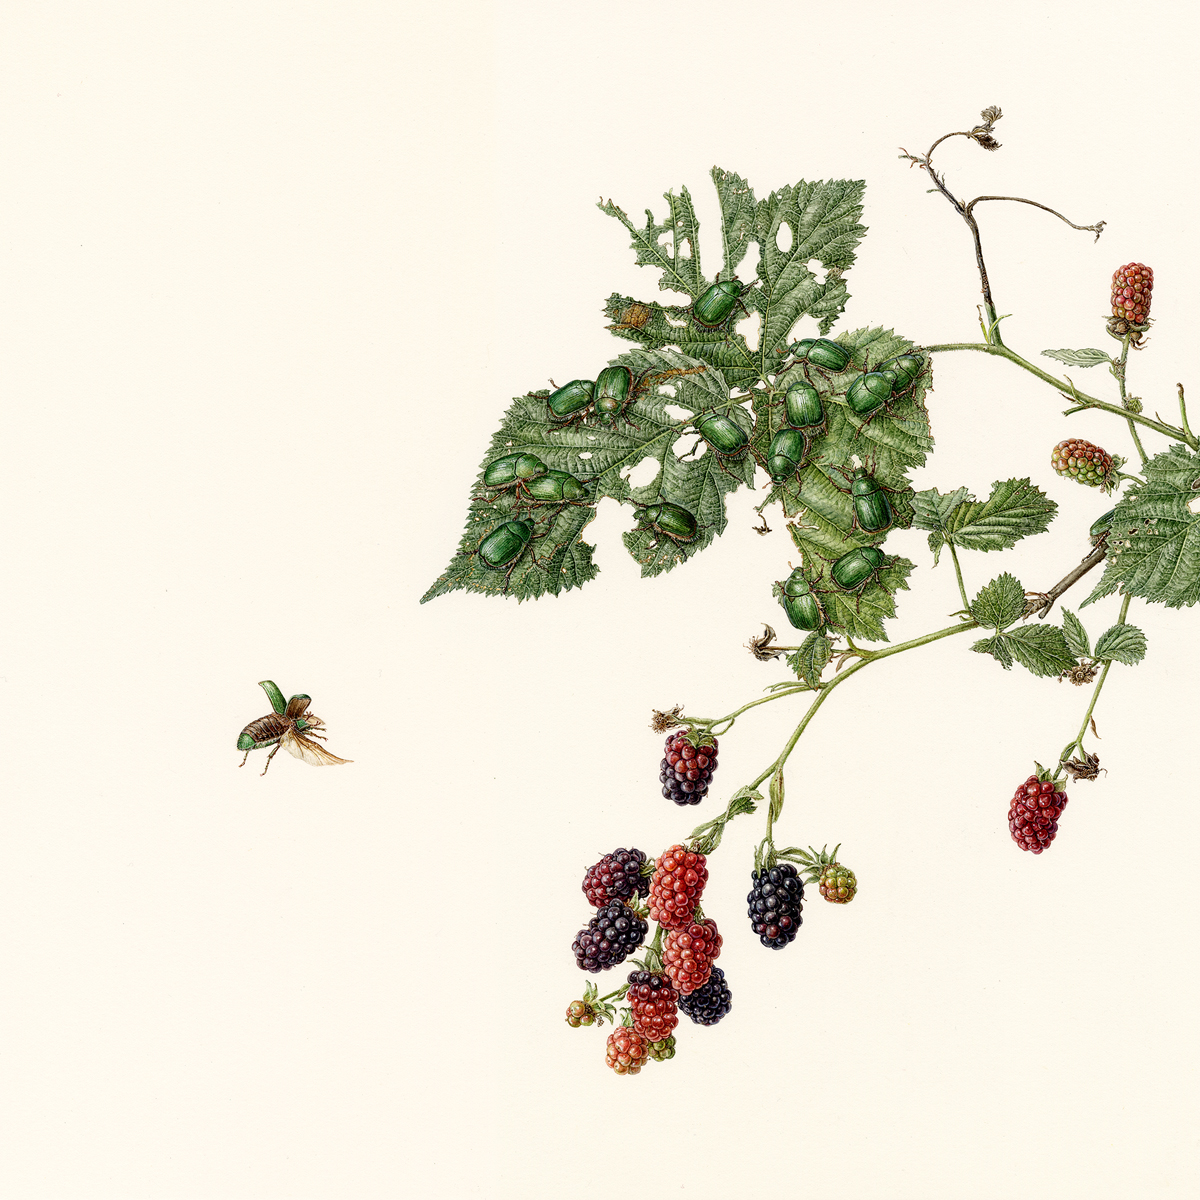 徒然の草　ブラックベリーとアオドウガネ　Turezure no kusa - Blackberry and beetles
 2020 / Watercolor on paper / 35 x 35 cm